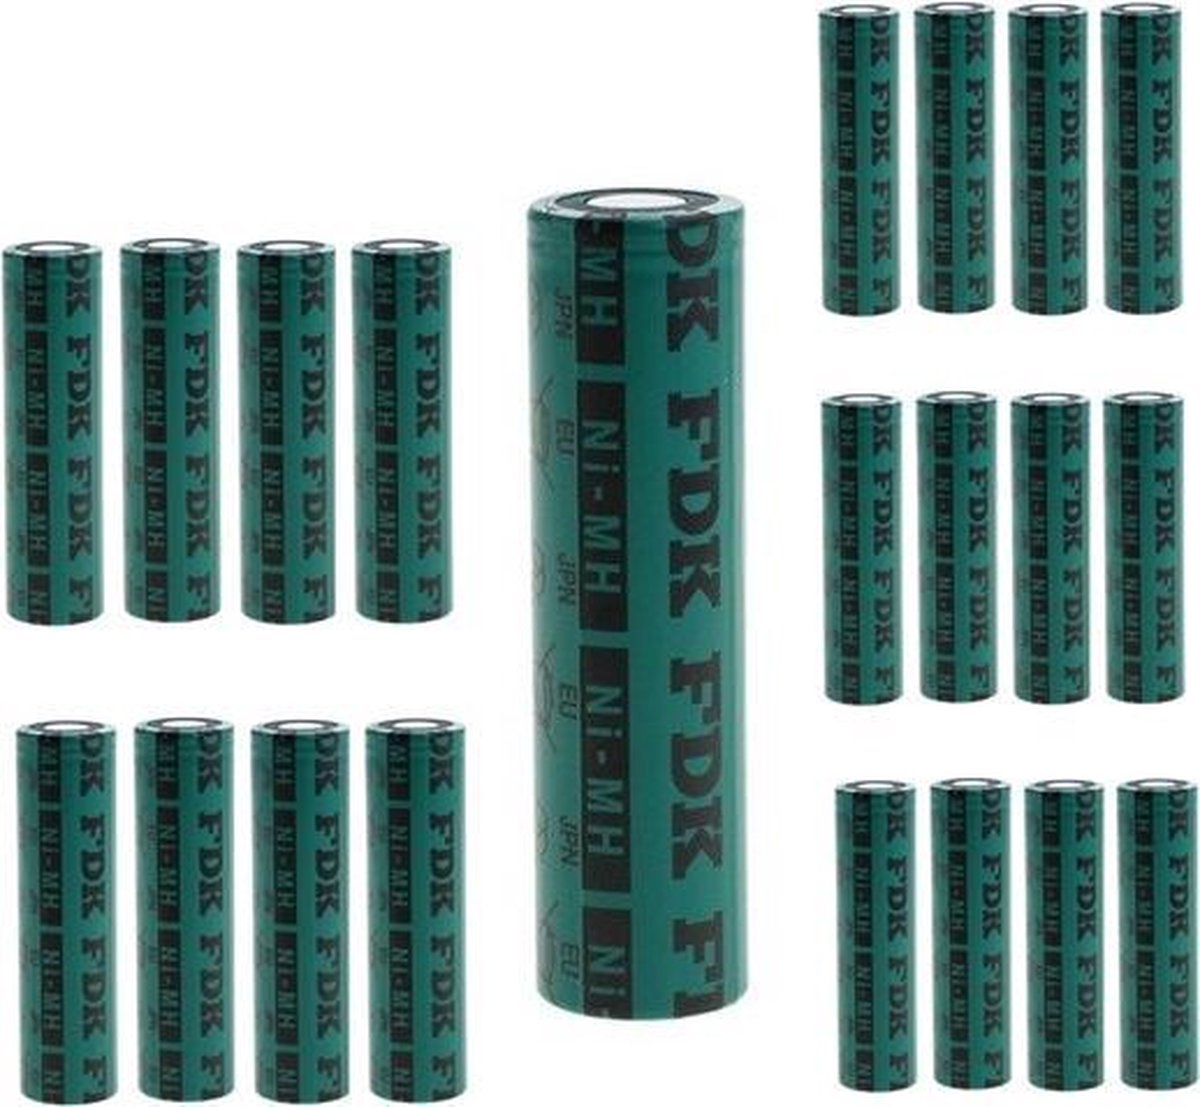 20 Stuks - FDK HR 4/3FAU Batterij NiMH 1.2V 4500mAh